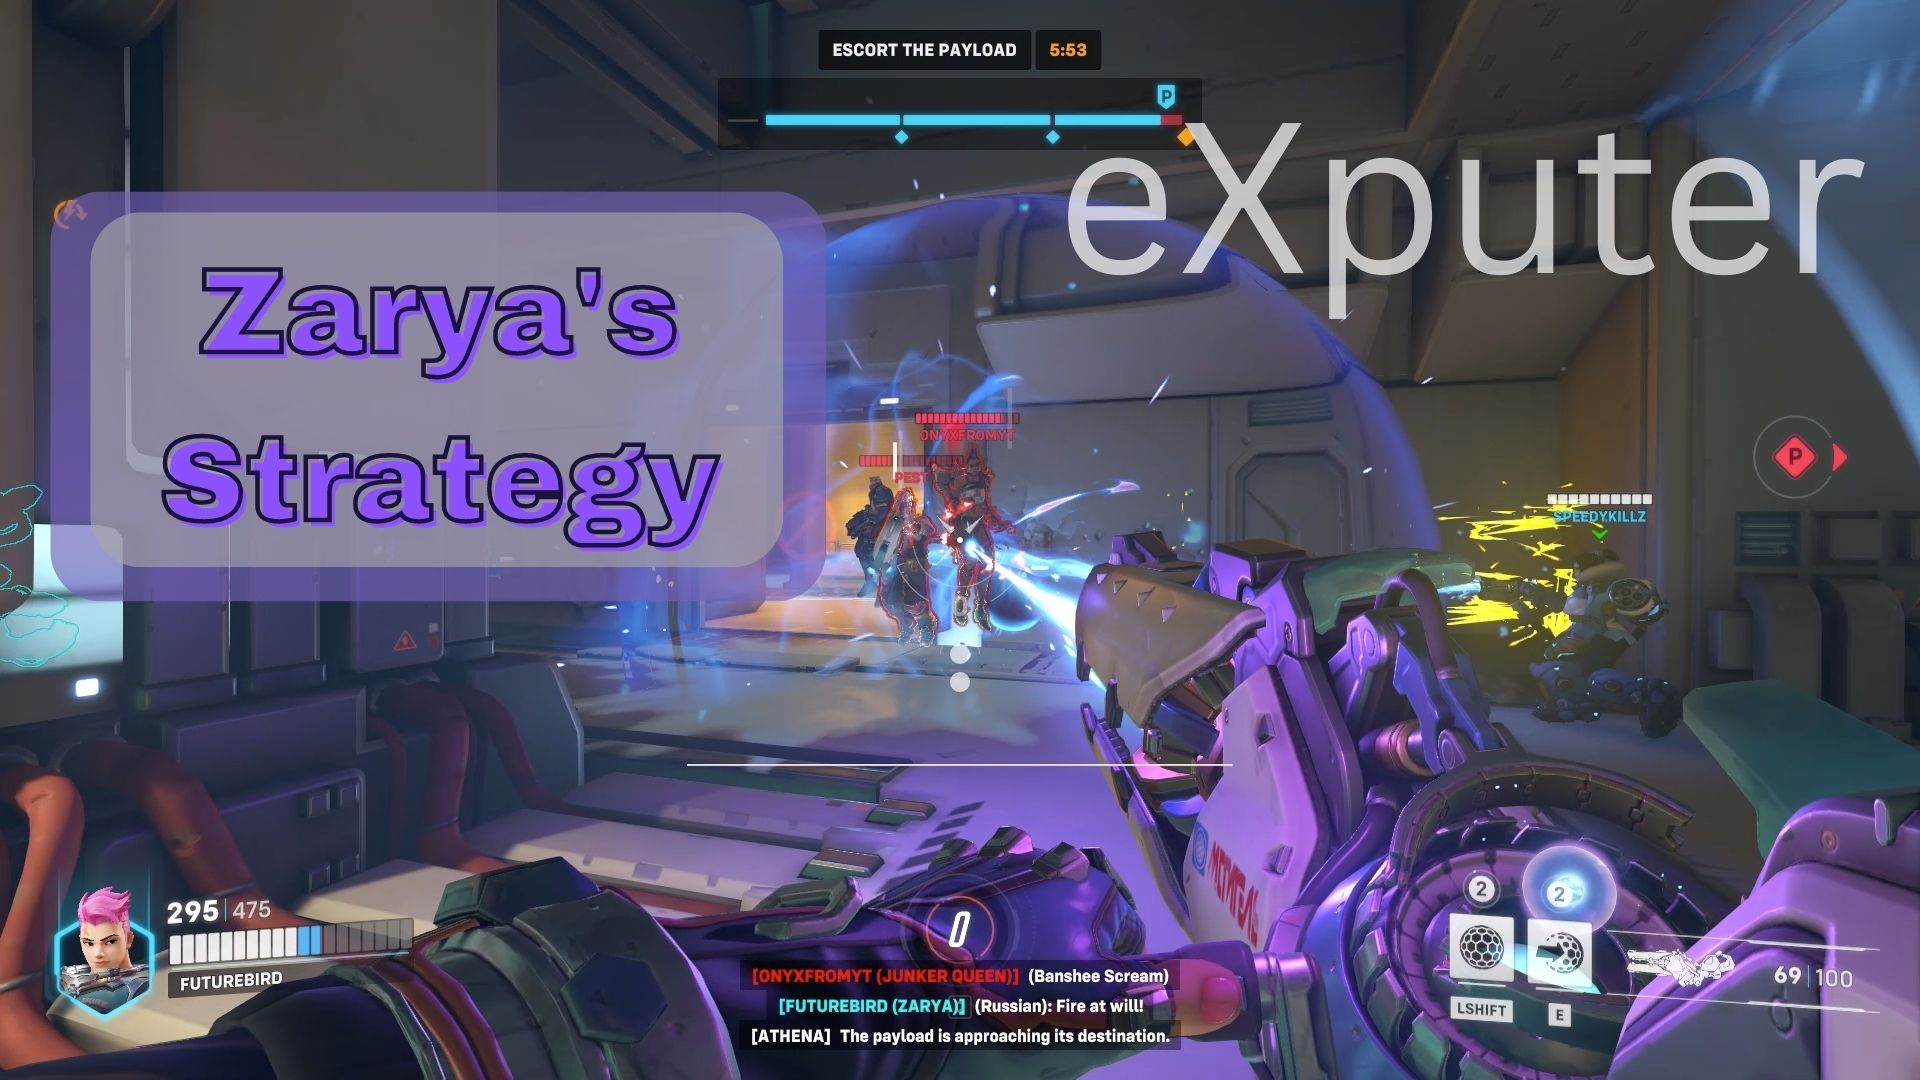 Strategy for Zarya in Overwatch 2